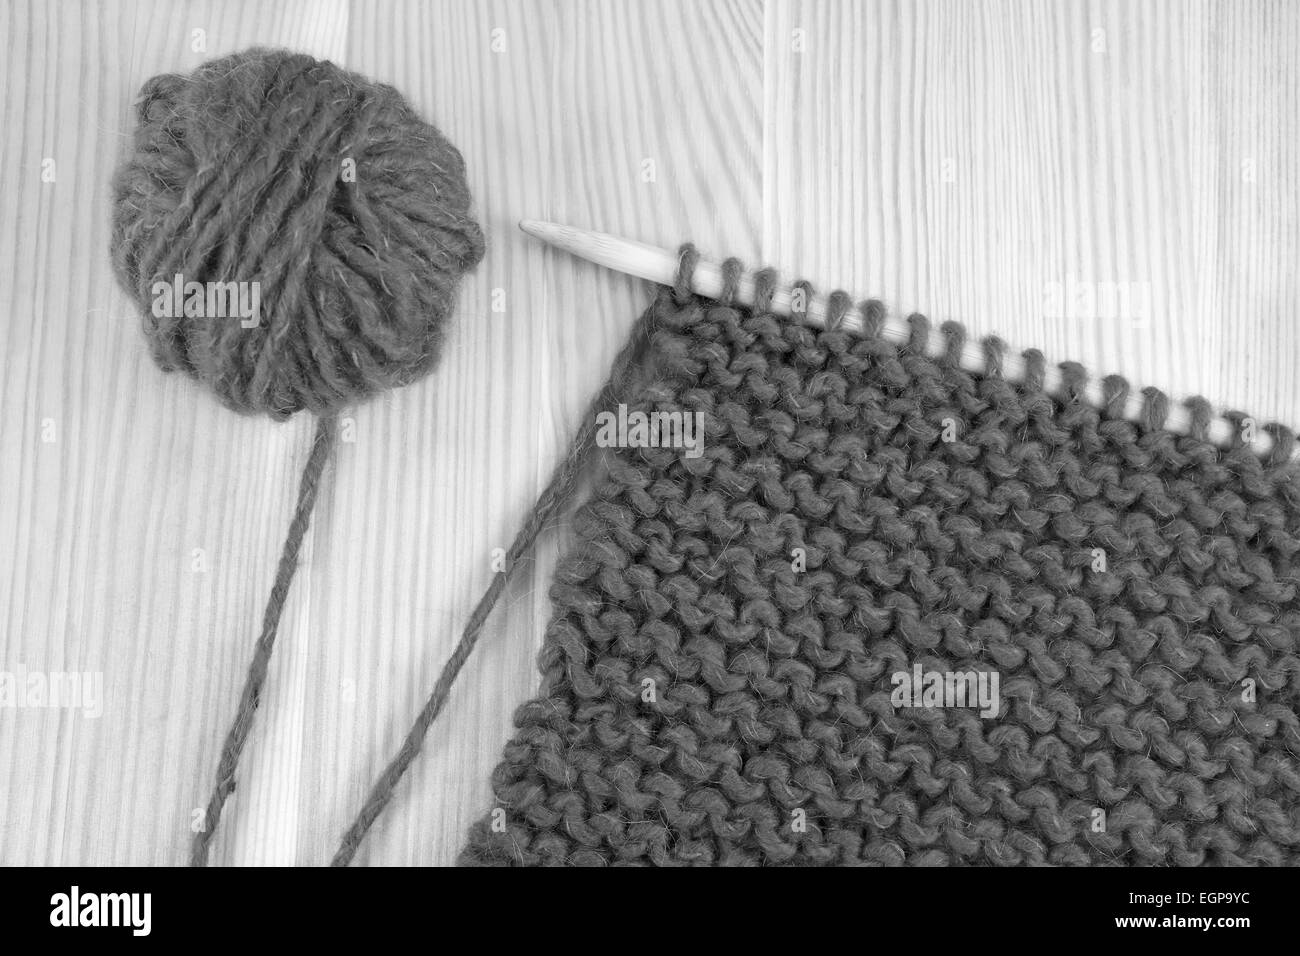 Balle de laine et garter stitch sur une aiguille à tricoter - traitement monochrome Banque D'Images